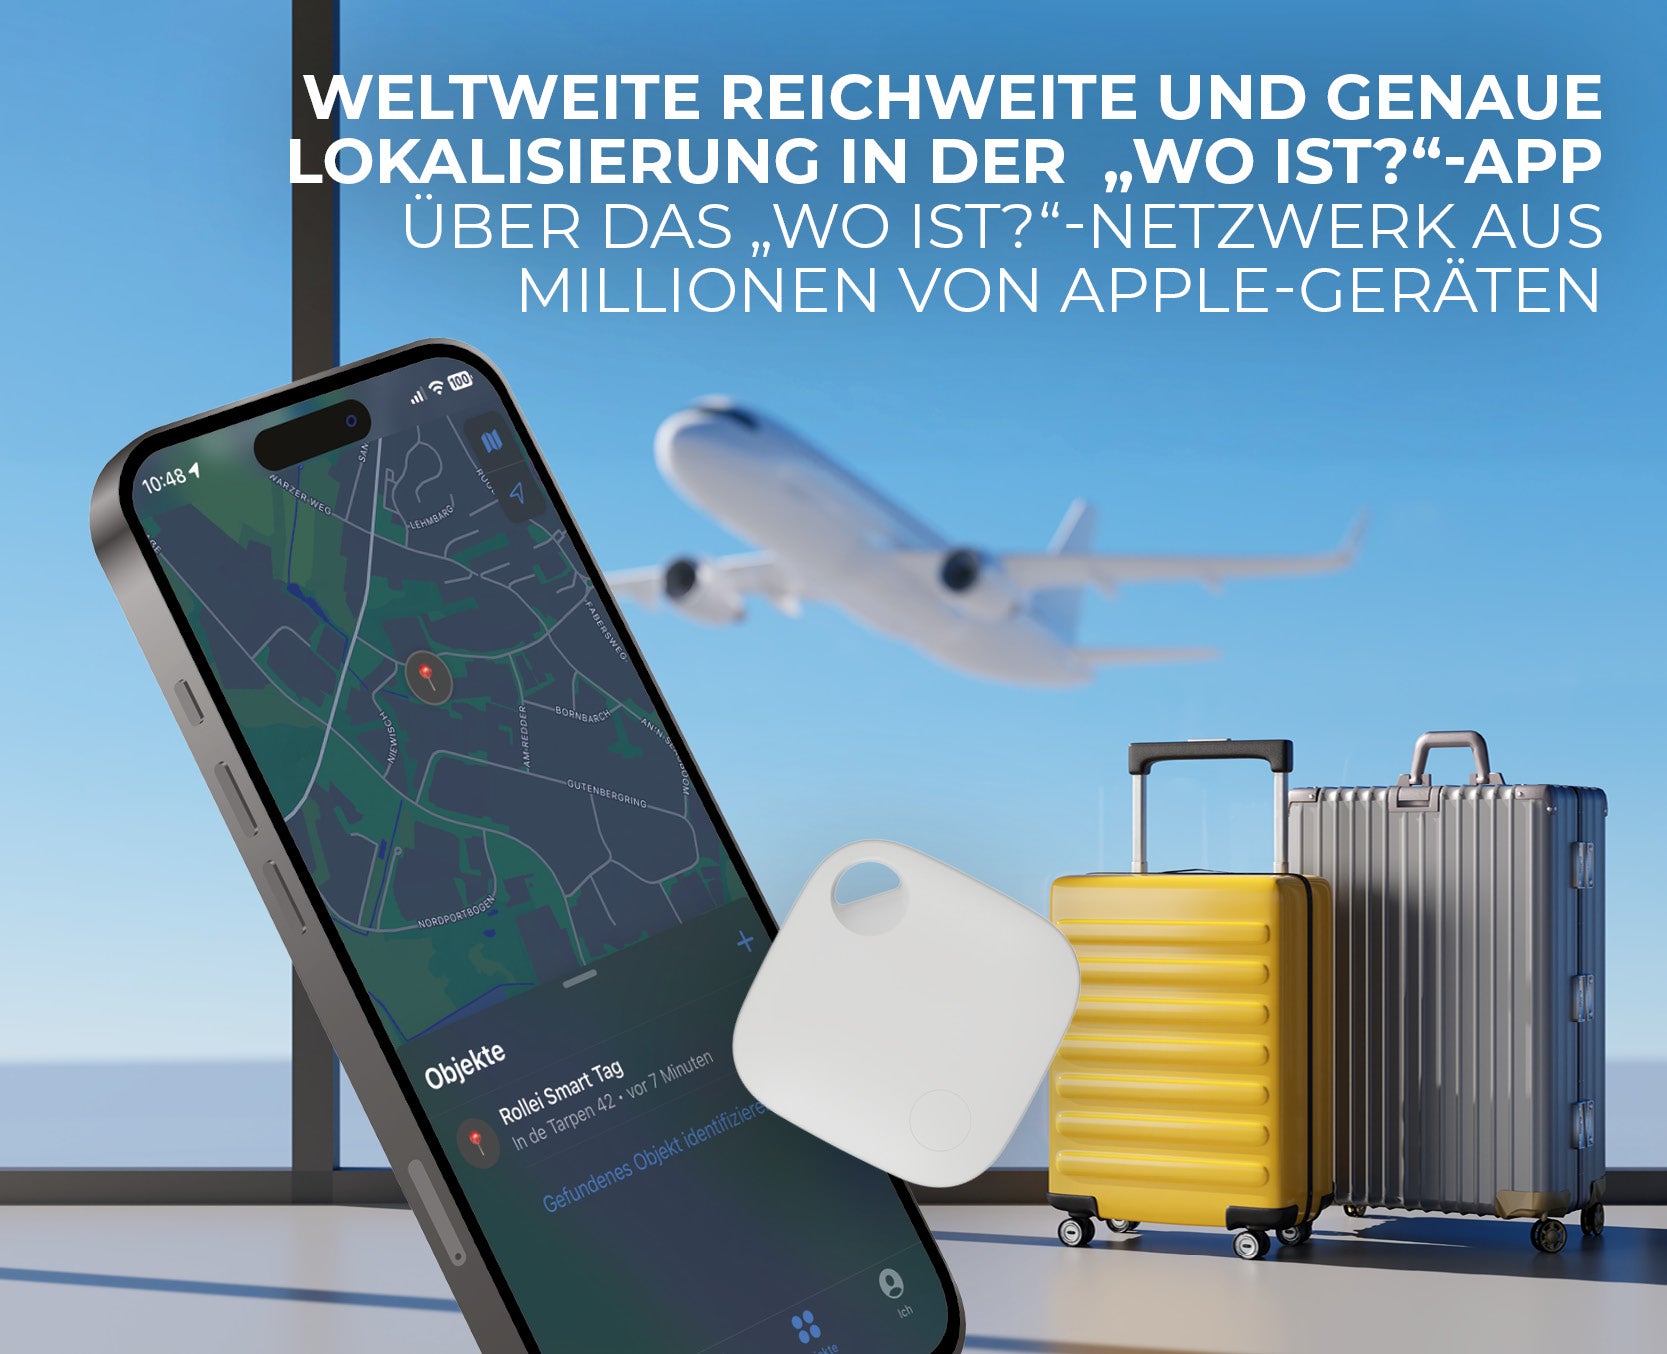 Weltweite Reichweite und genaue Lokalisierung in der "Wo ist?" -App für iOS Apple Geräte